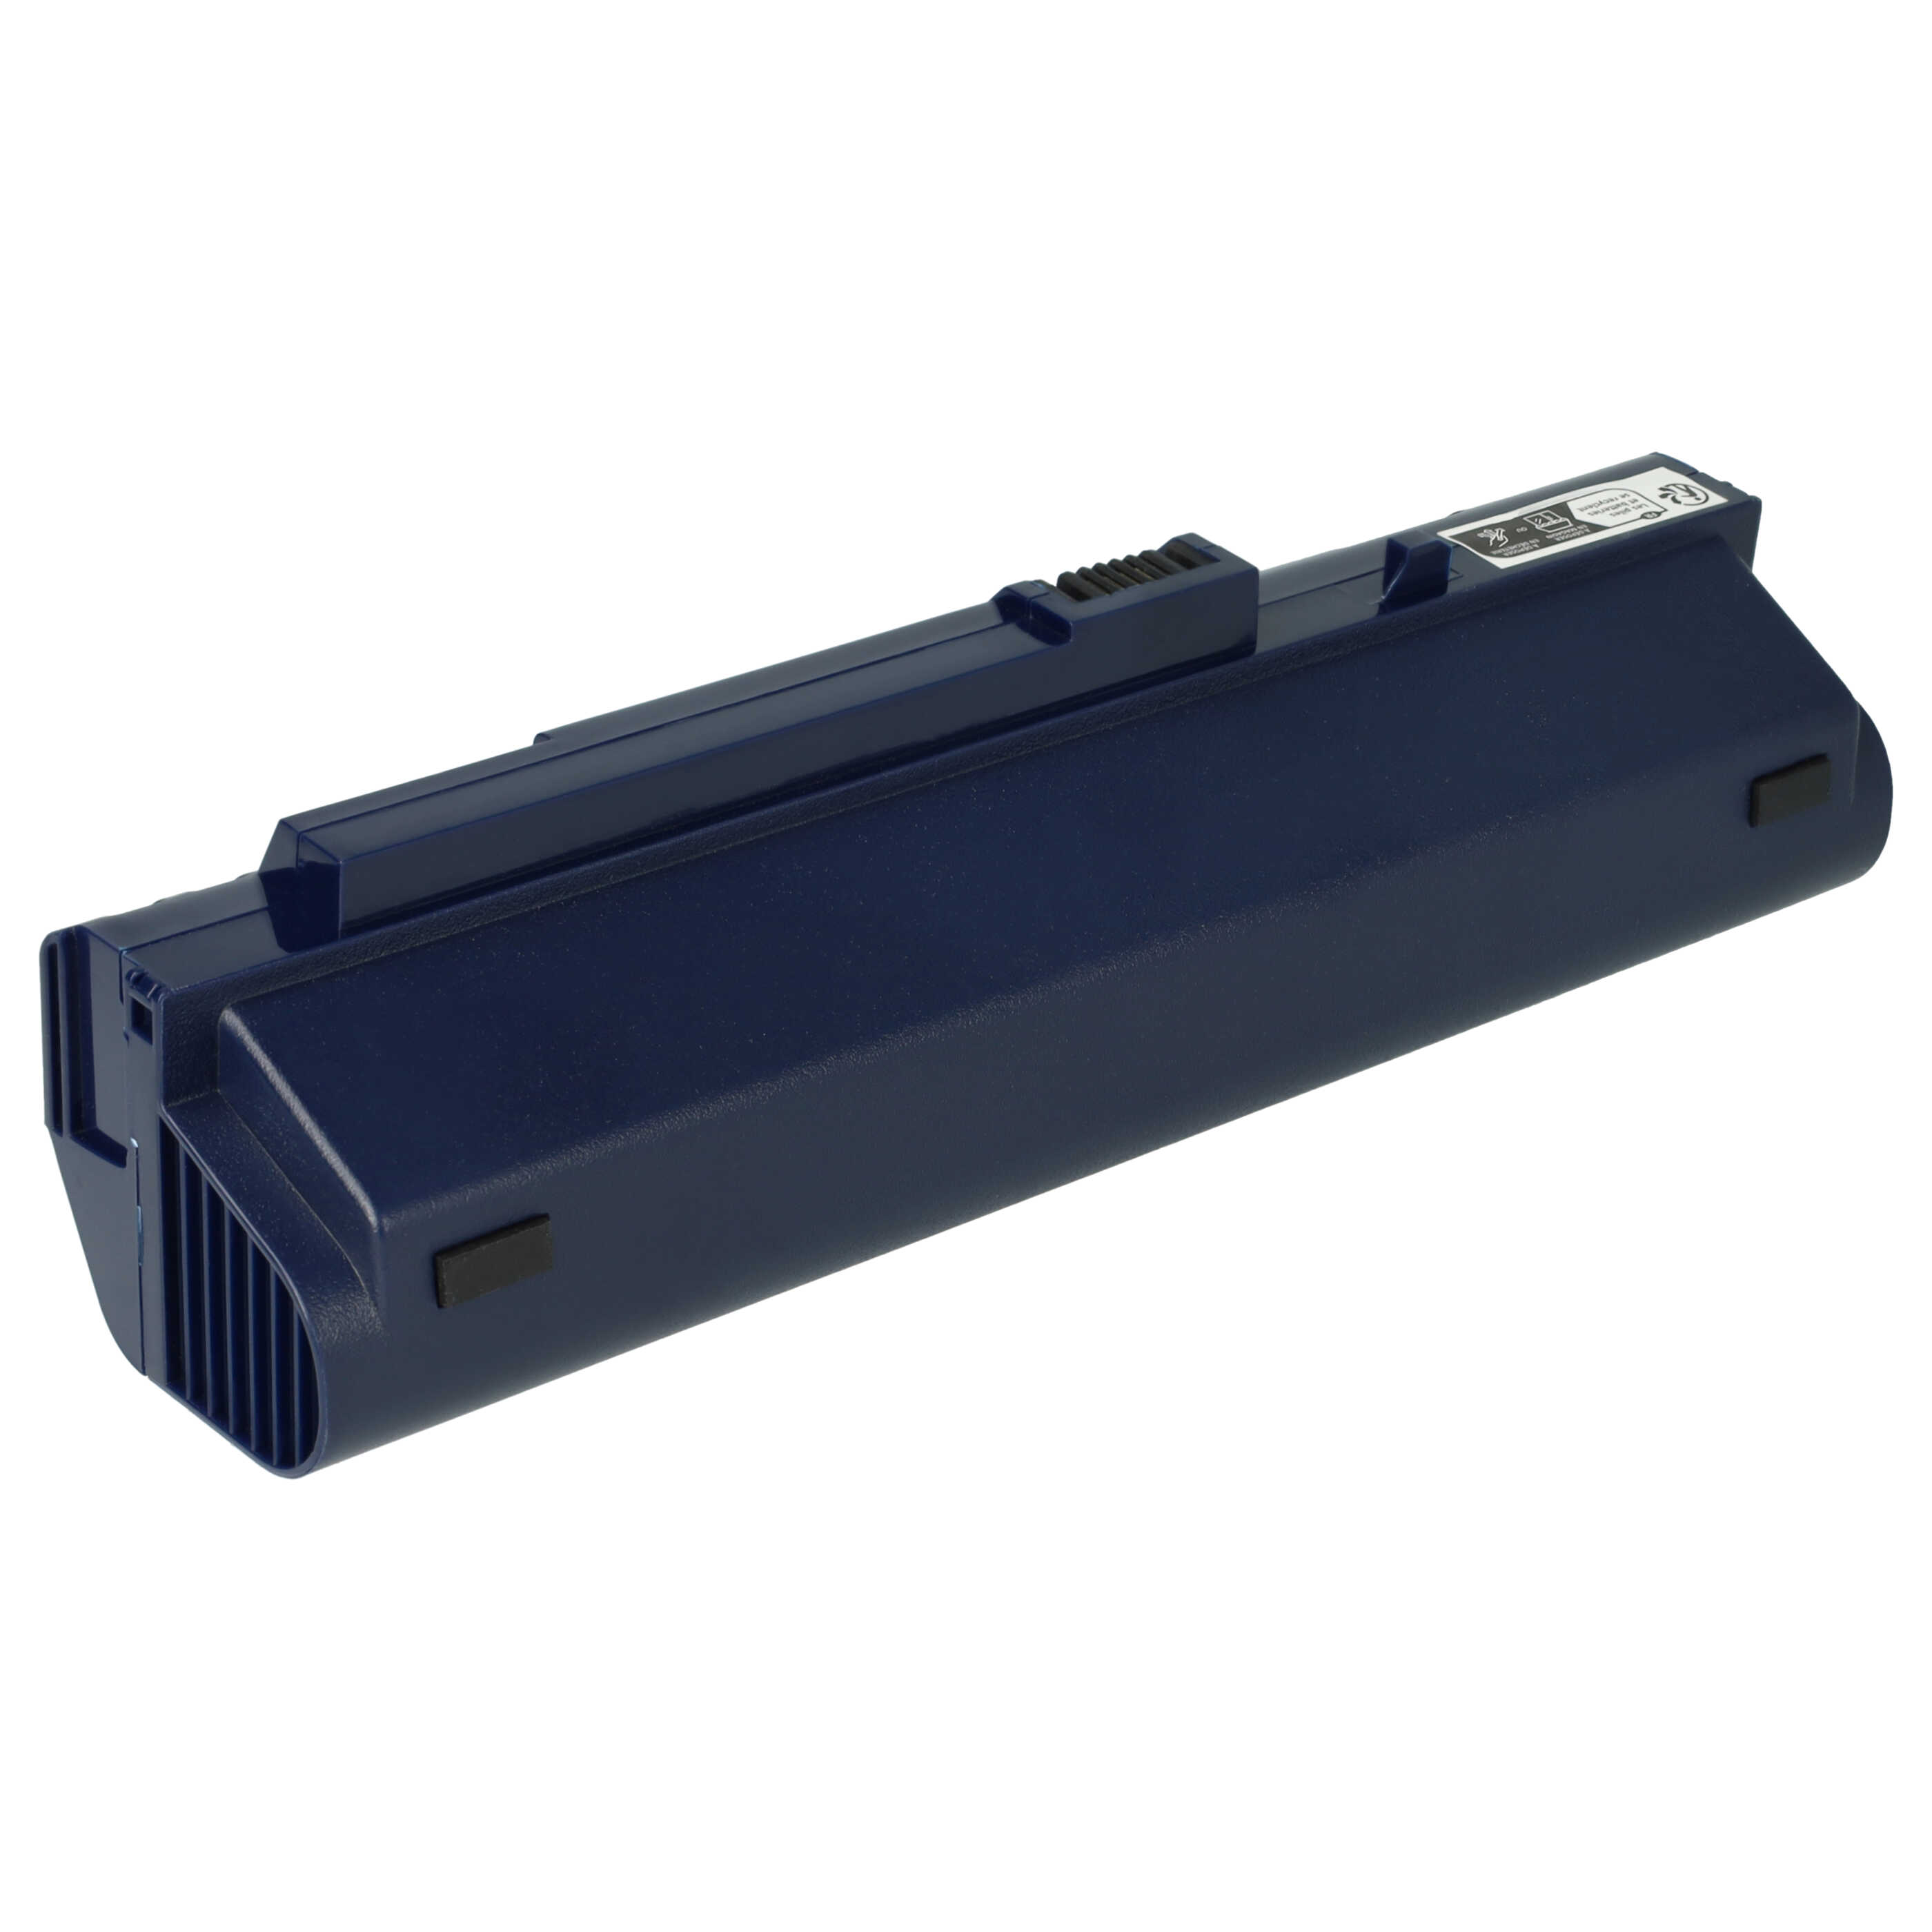 Batterie remplace Acer 934T2780F, BT.00605.035 pour ordinateur portable - 6600mAh 11,1V Li-ion, bleu foncé